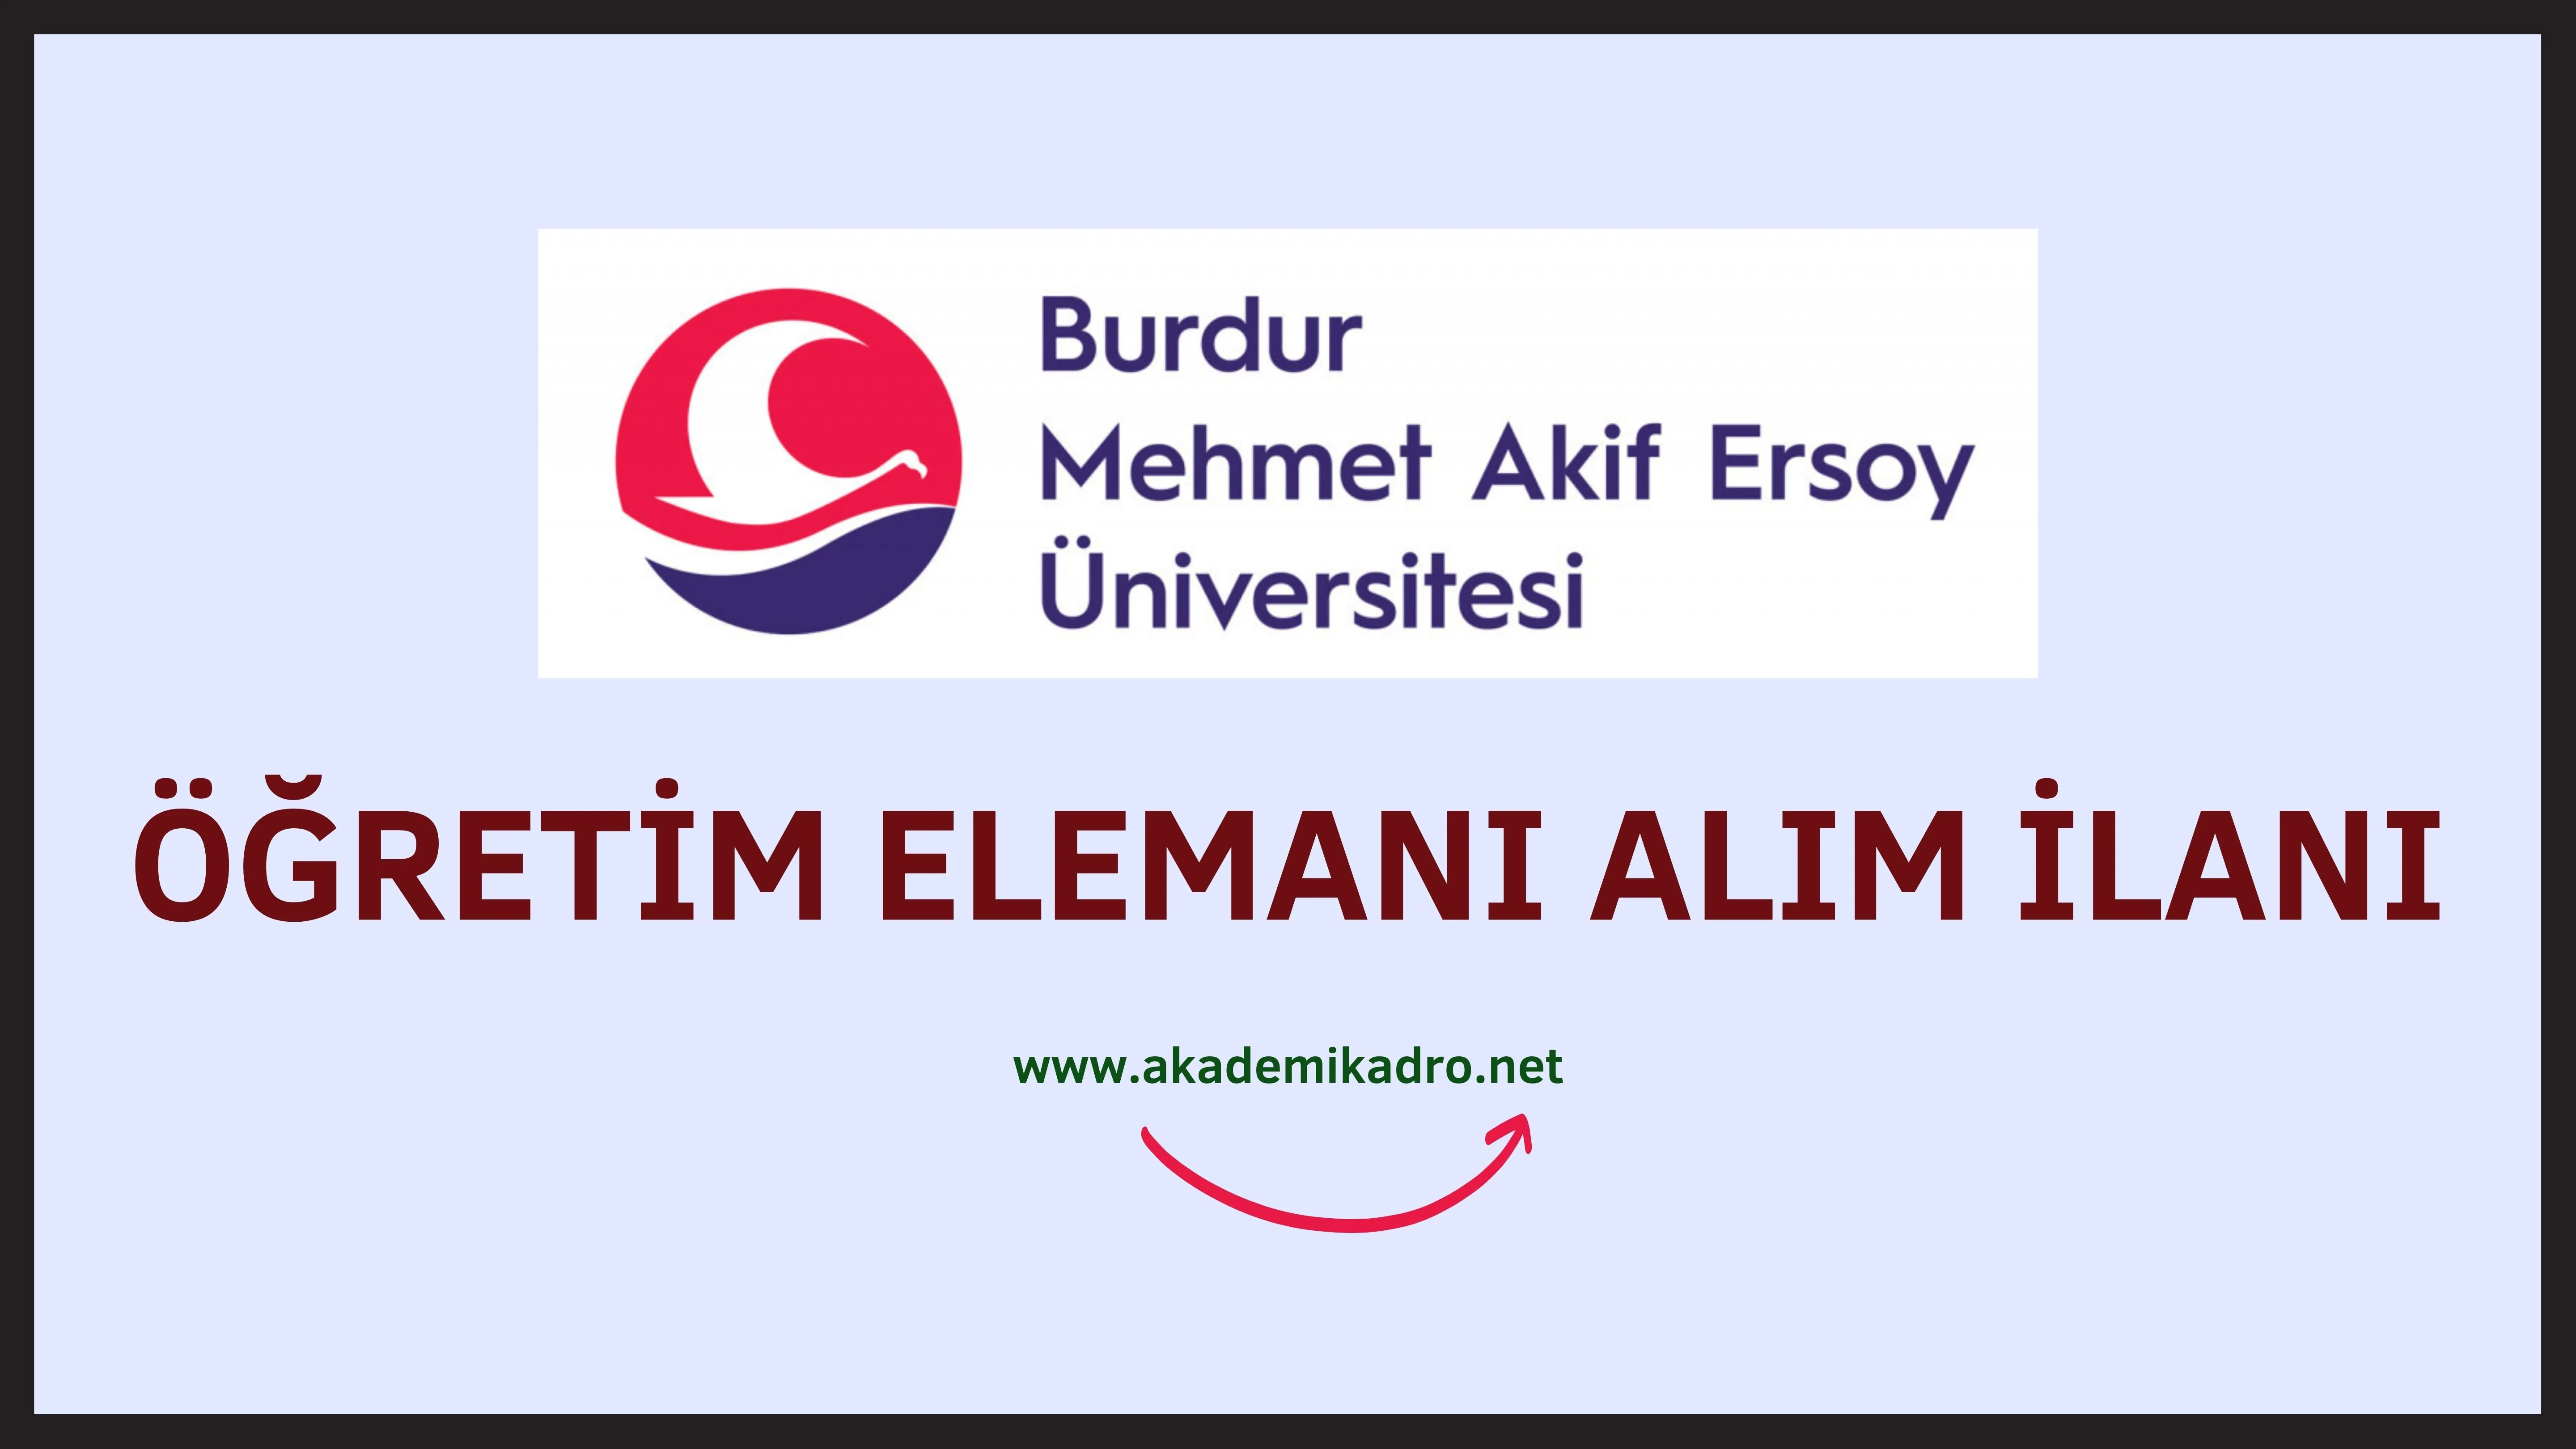 Burdur Mehmet Akif Ersoy Üniversitesi 6 Öğretim görevlisi alacaktır. Son başvuru tarihi 15 Kasım 2022